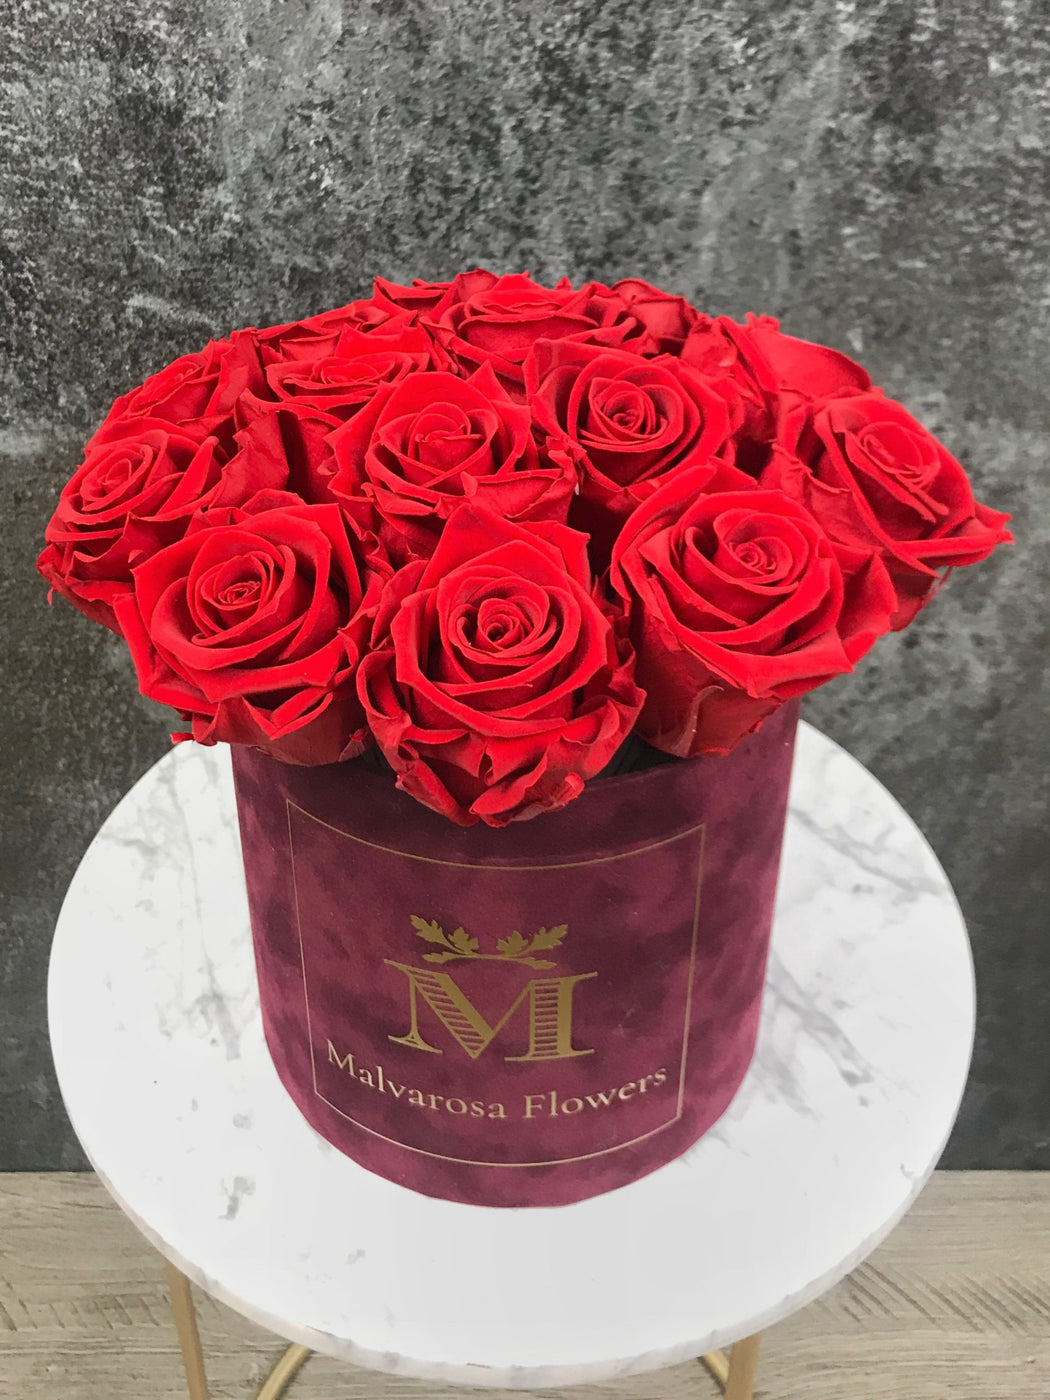 Flower box with red eternal roses - Luxury bouquet in burgundy velvet box